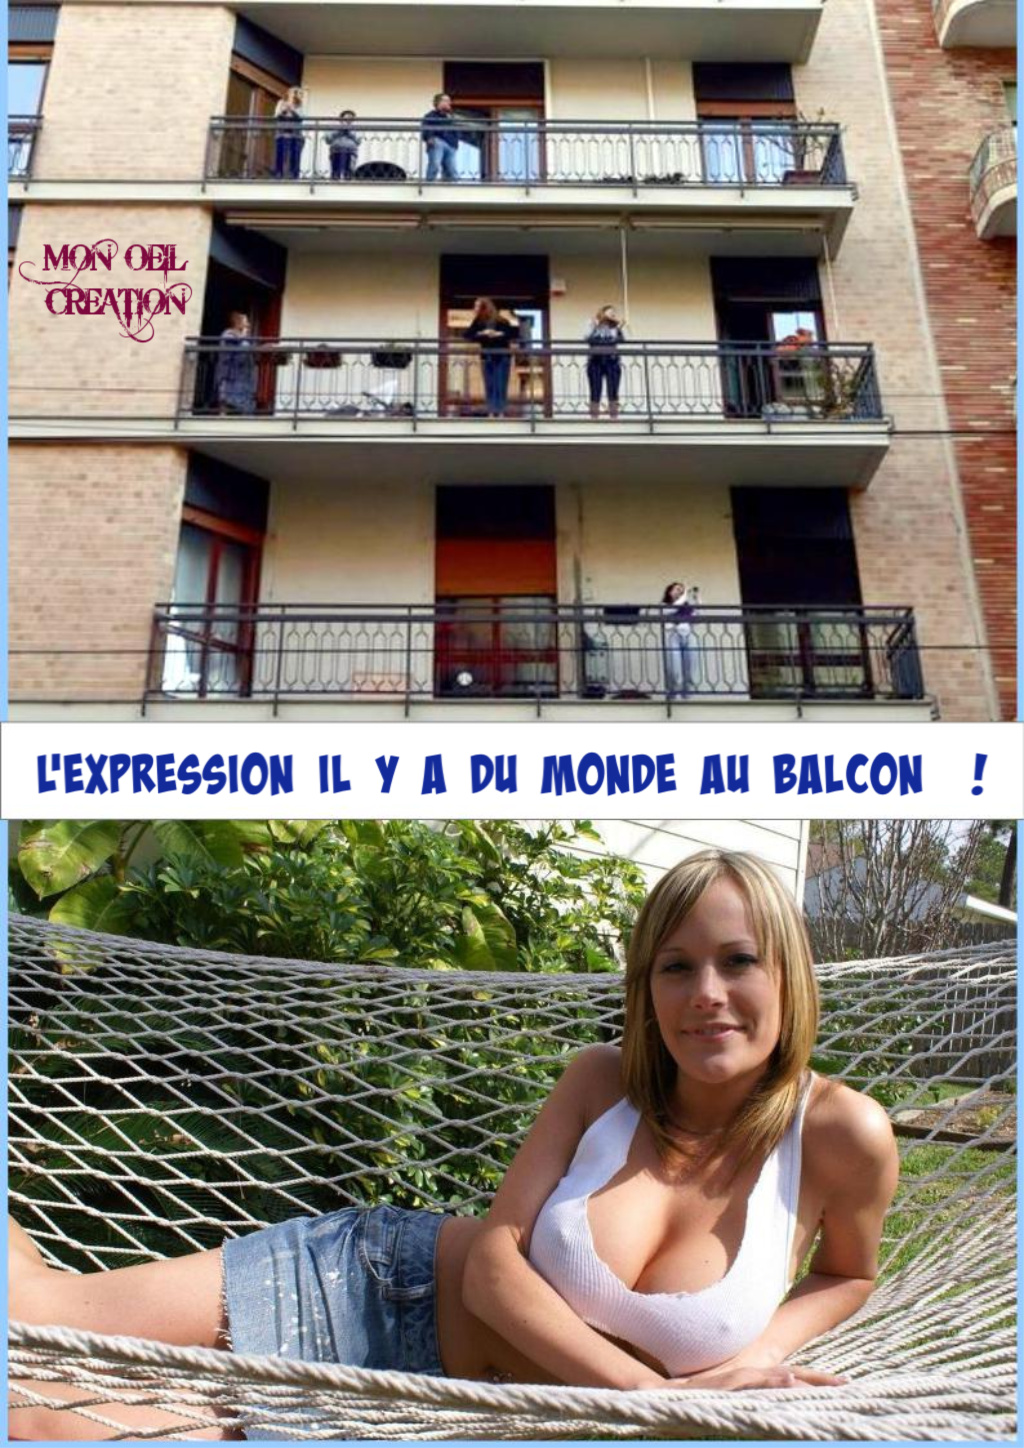 AW25. Humour - Le Balcon